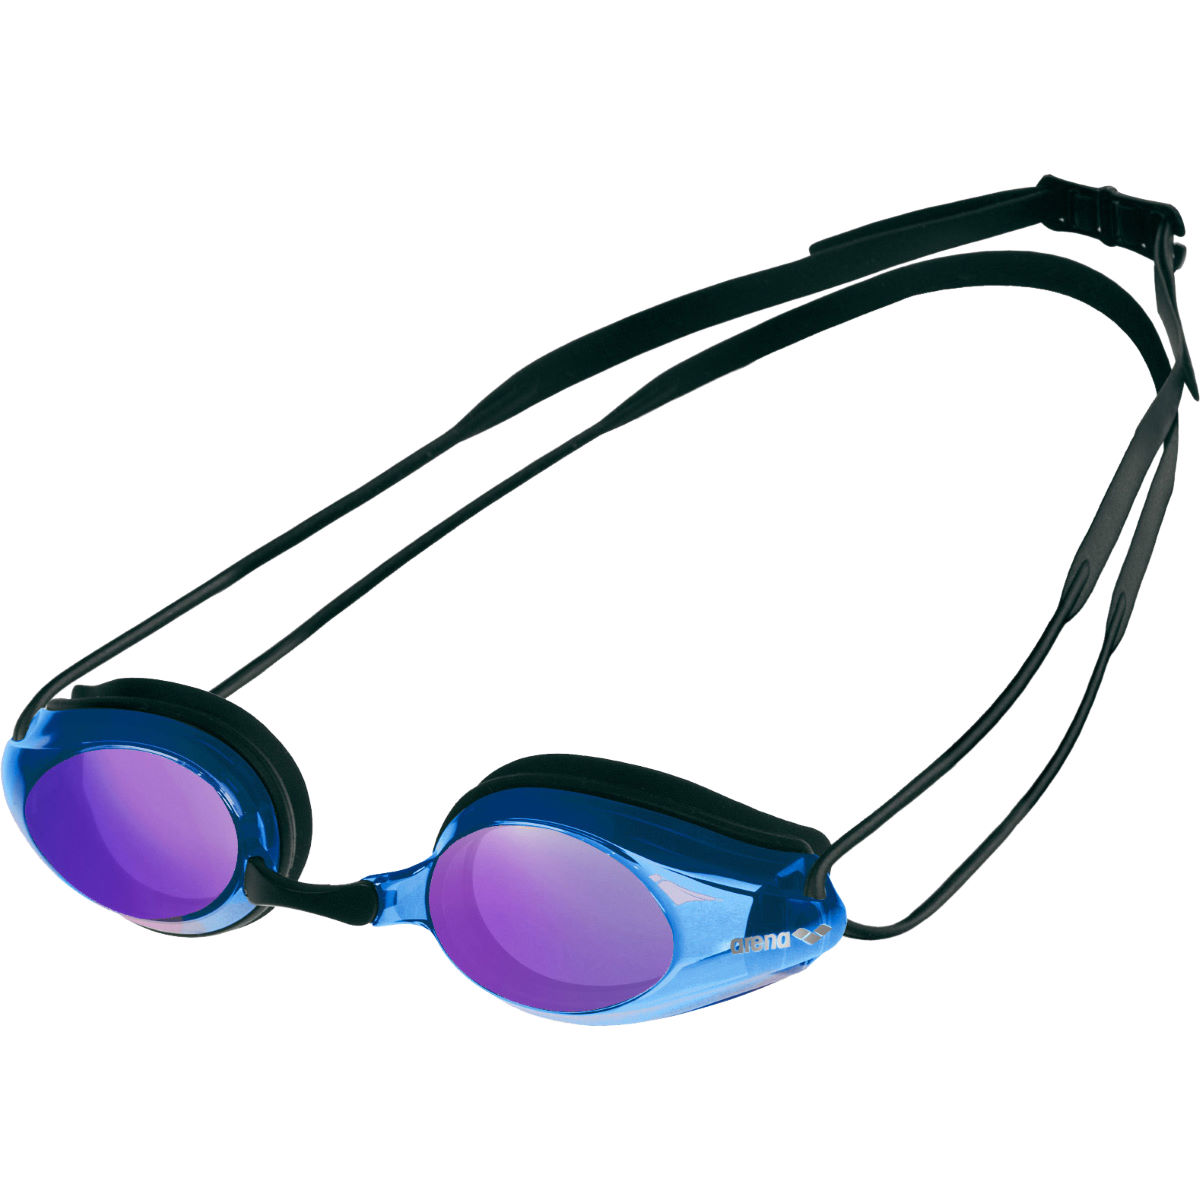 Gafas de natación Arena Tracks Mirror - Gafas